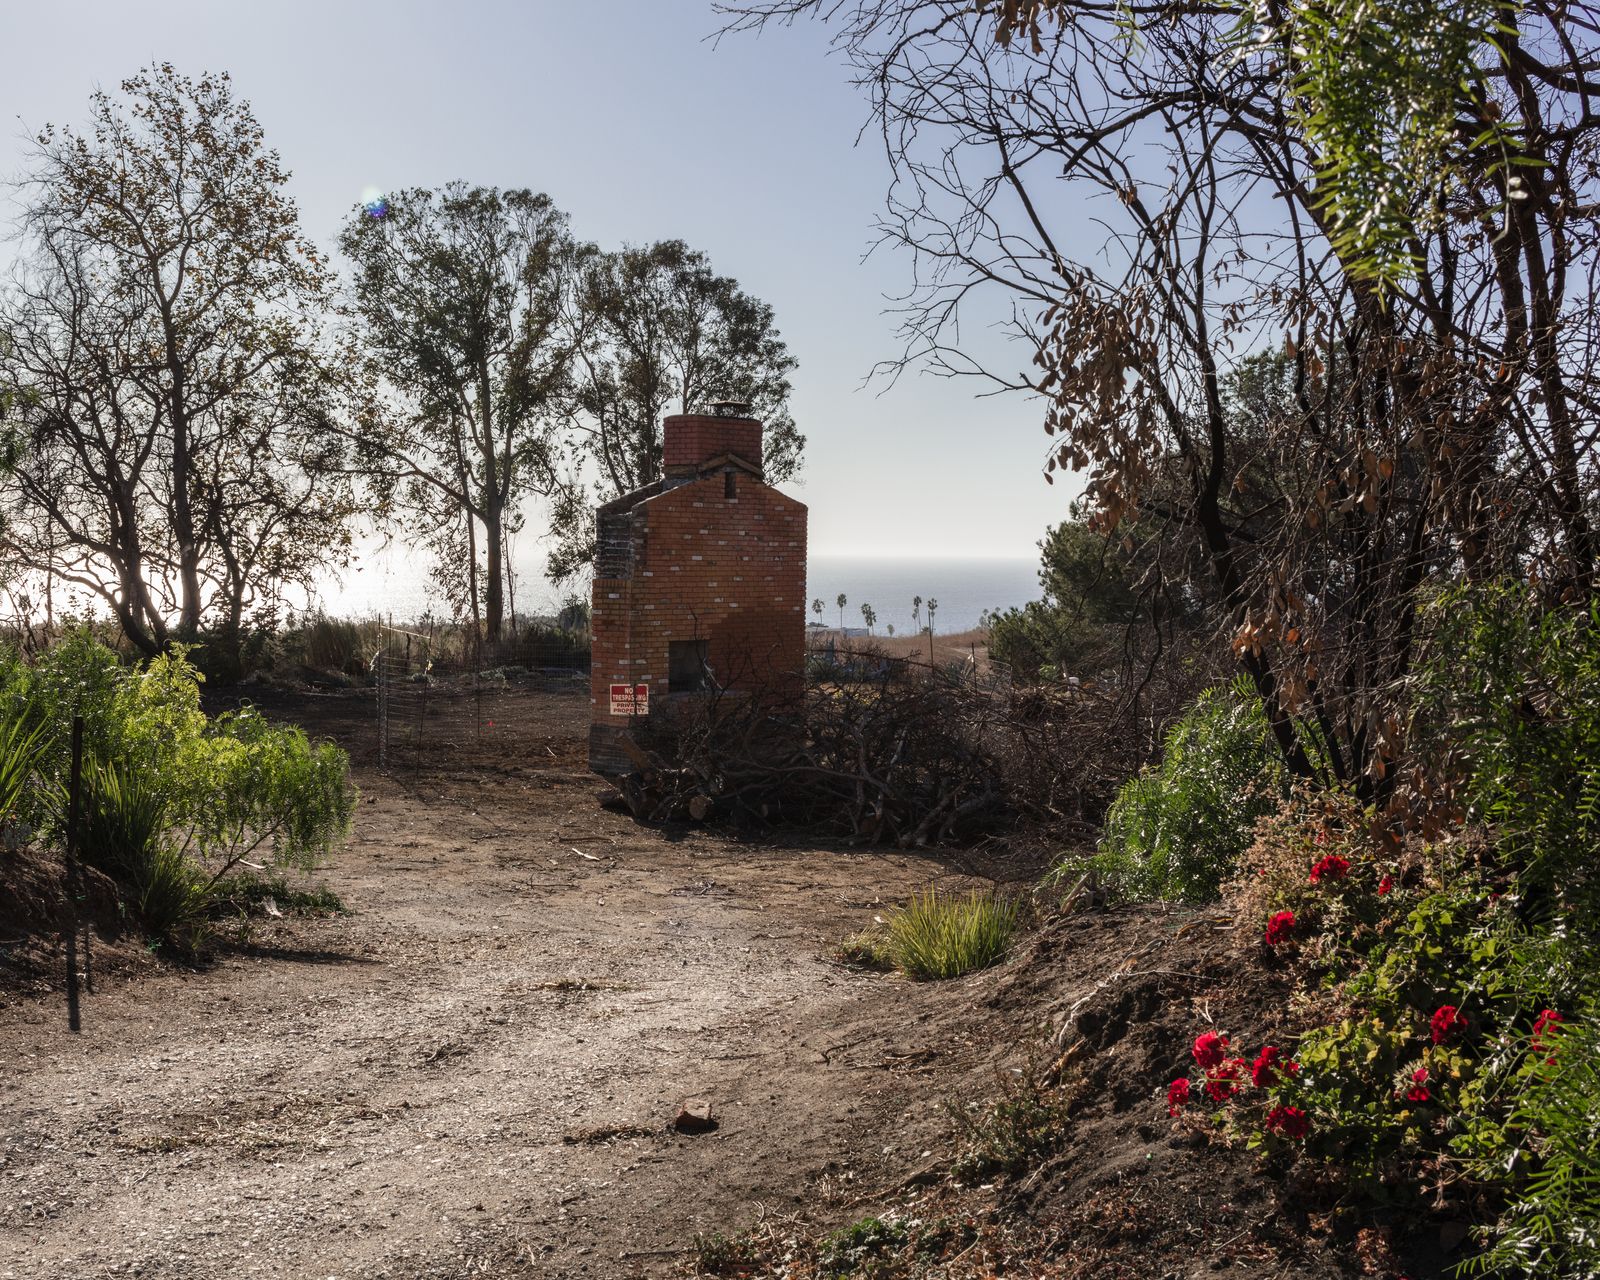 © Anastasia Samoylova - Chimney of a burnt down house in Malibu, CA